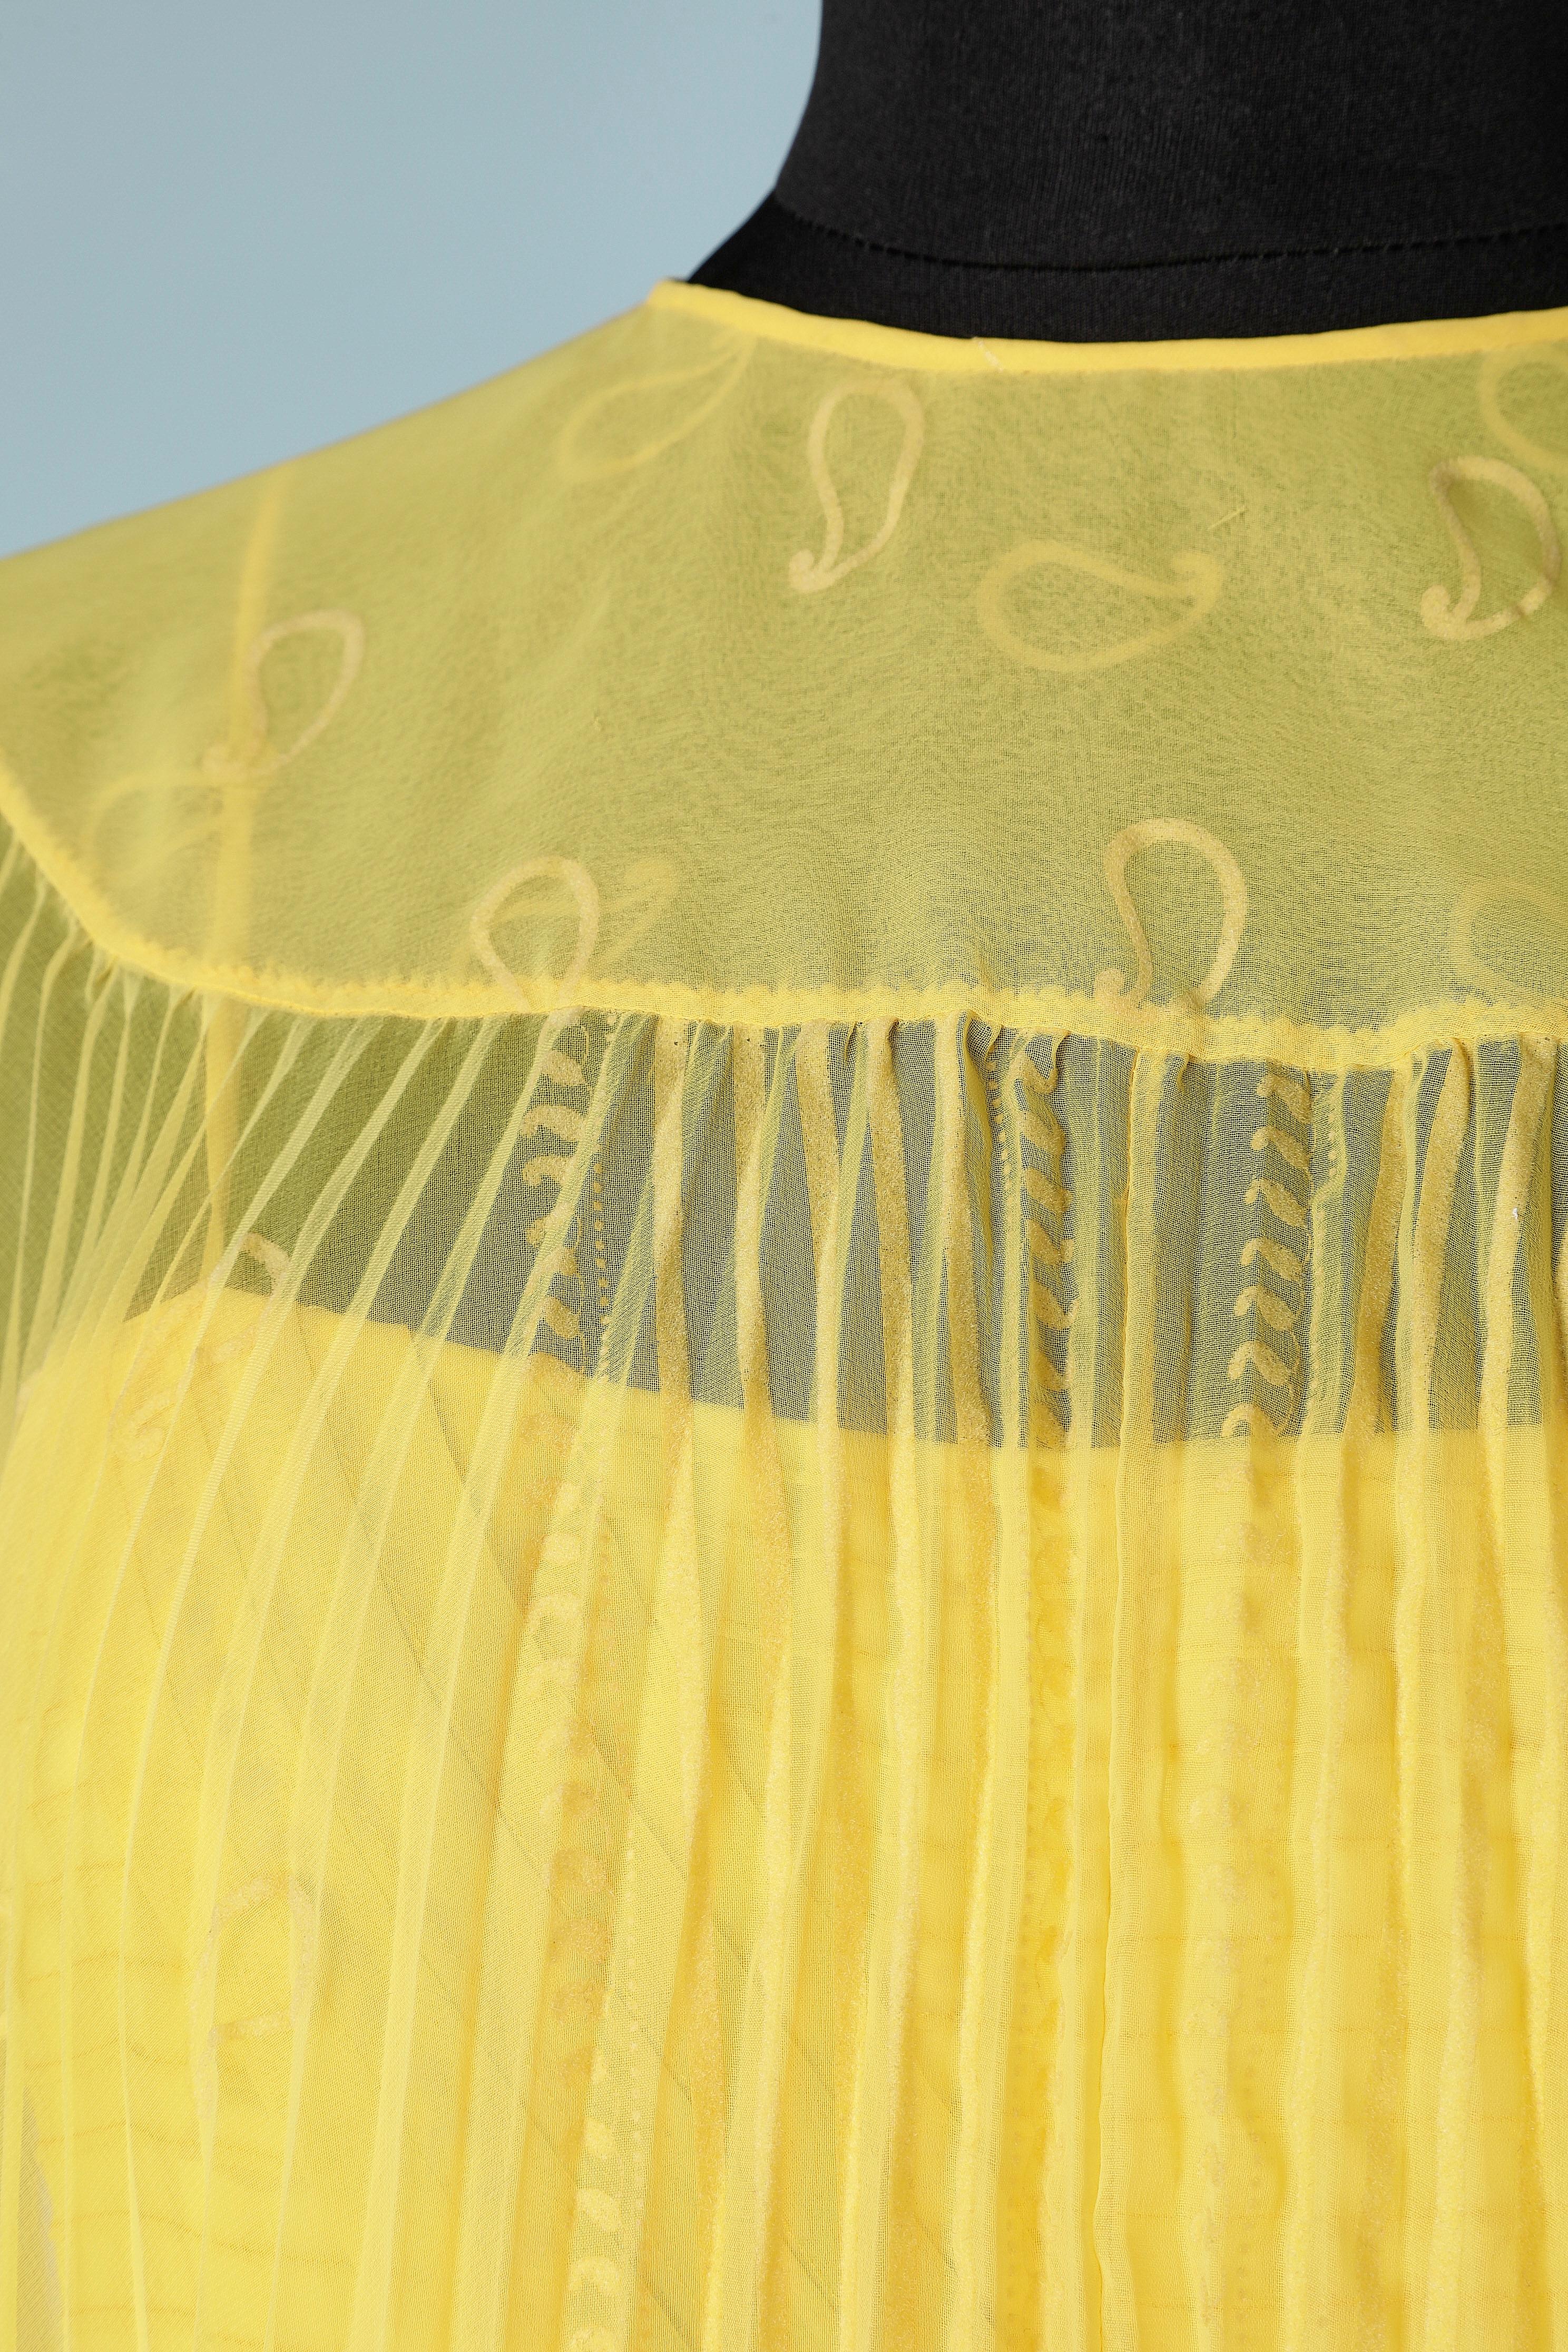 Sonnenstrahl Falten gelb plissiert Umhang und Cocktailkleid Ensemble . Der Umhang ist normal mit der Öffnung in der Front tragen (Fehler auf dem Bild) Cut-Work auf den Schultern.
Mit einem Haken und einer Öse in der Mitte schließen. Das Kleid wird